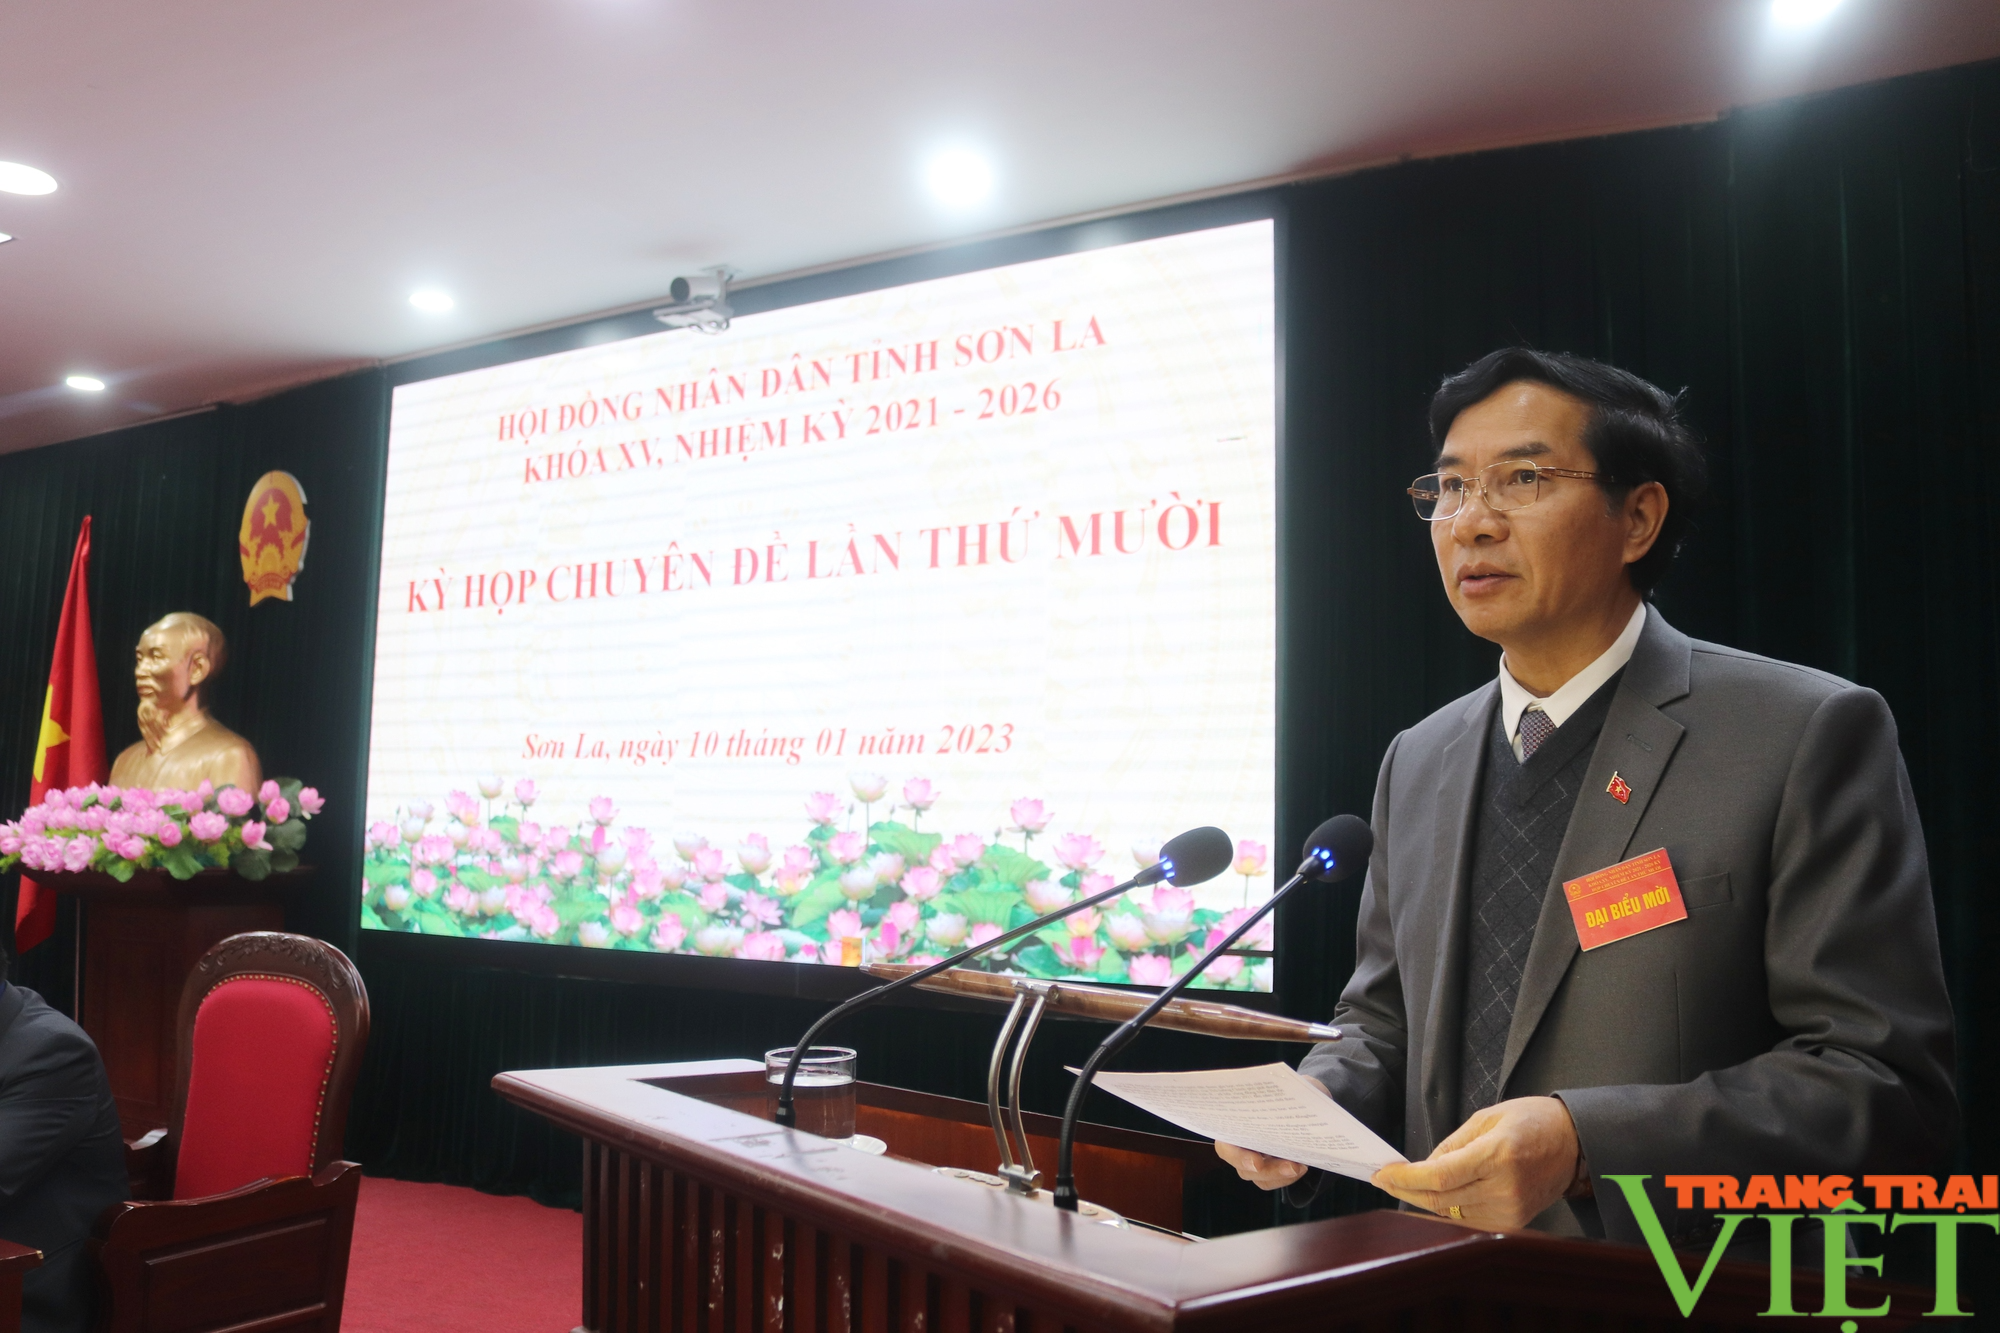 10 nội dung quan trọng được thông qua tại kỳ họp chuyên đề HĐND tỉnh Sơn La - Ảnh 5.